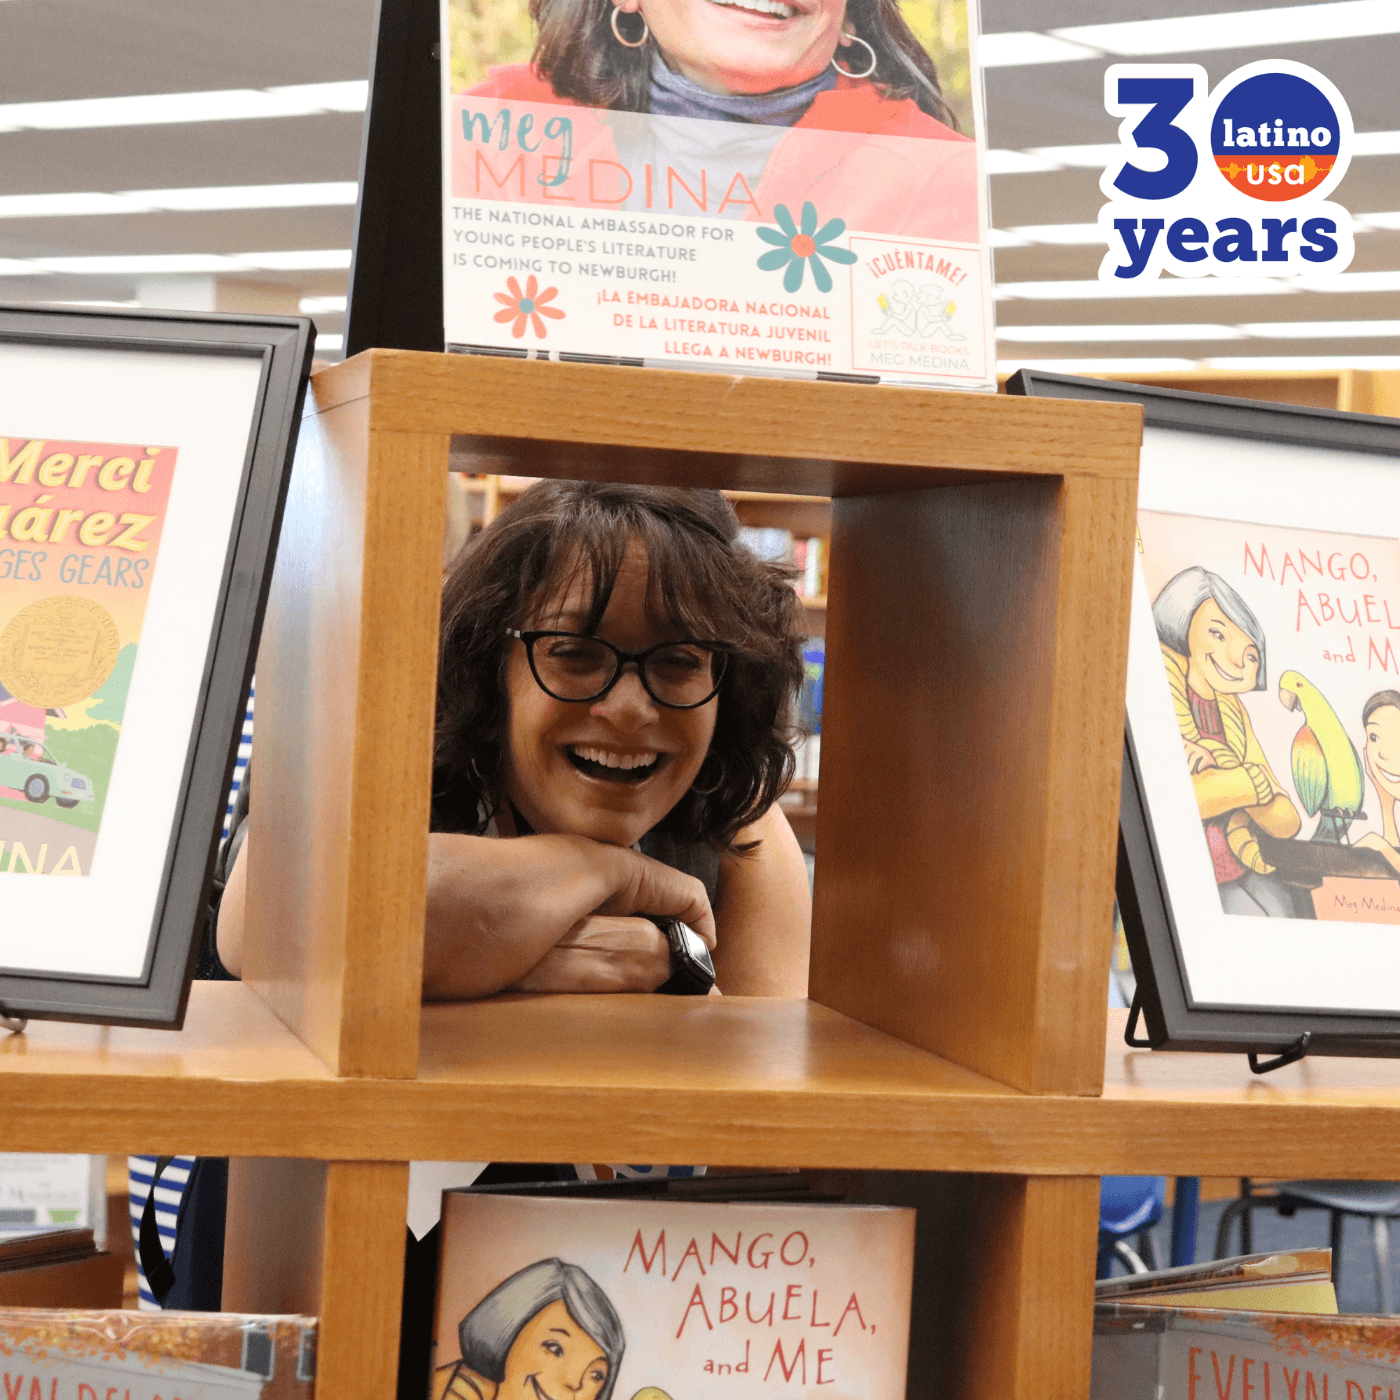 Thumbnail for "Meg Medina: Let Kids Read Freely".